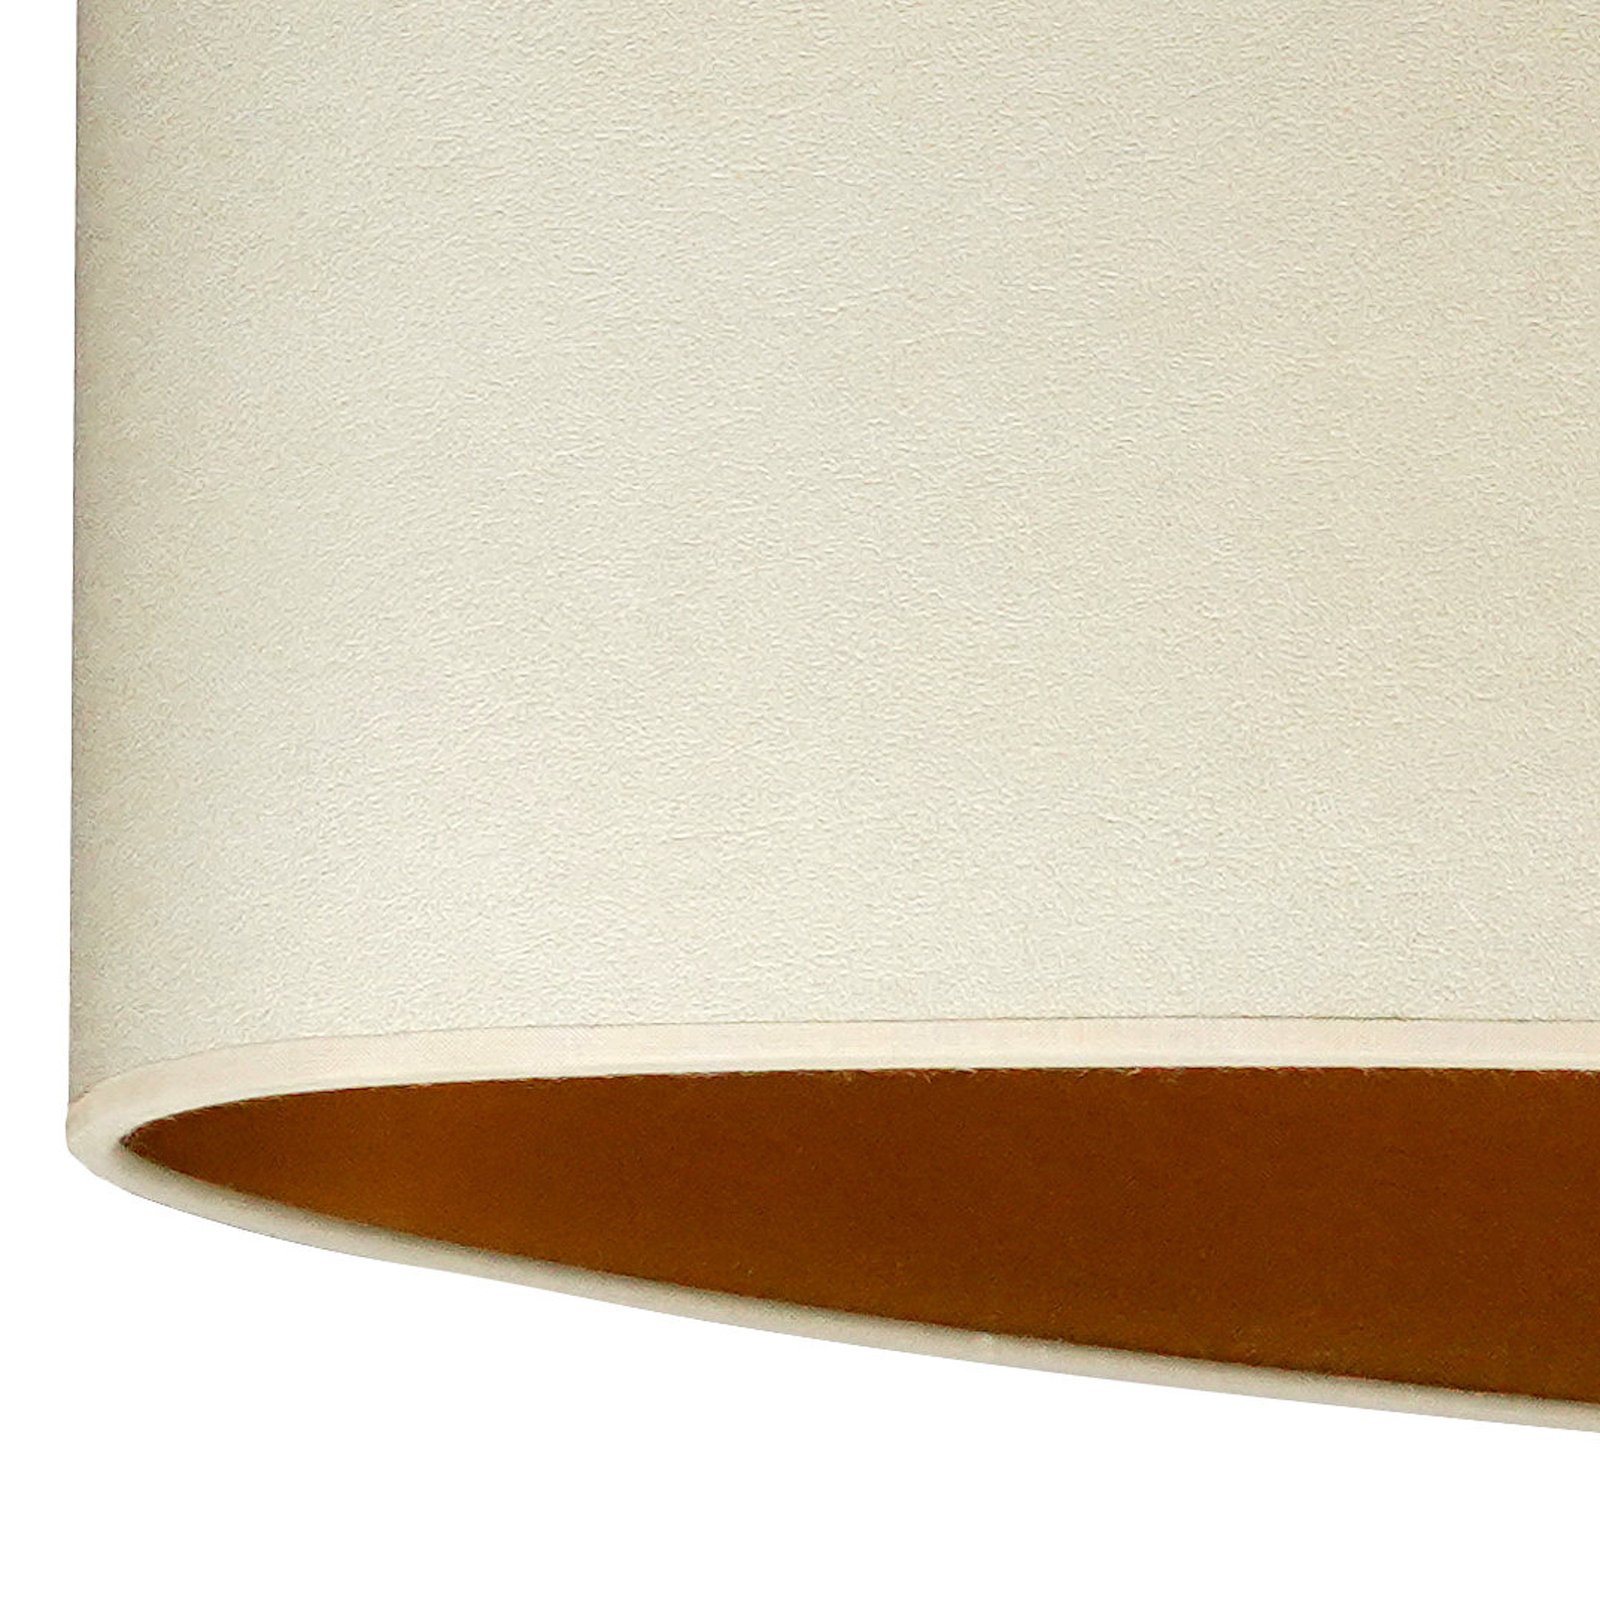 Závěsná lampa Envostar Idun light beige, imitace kůže vegan, 80 cm